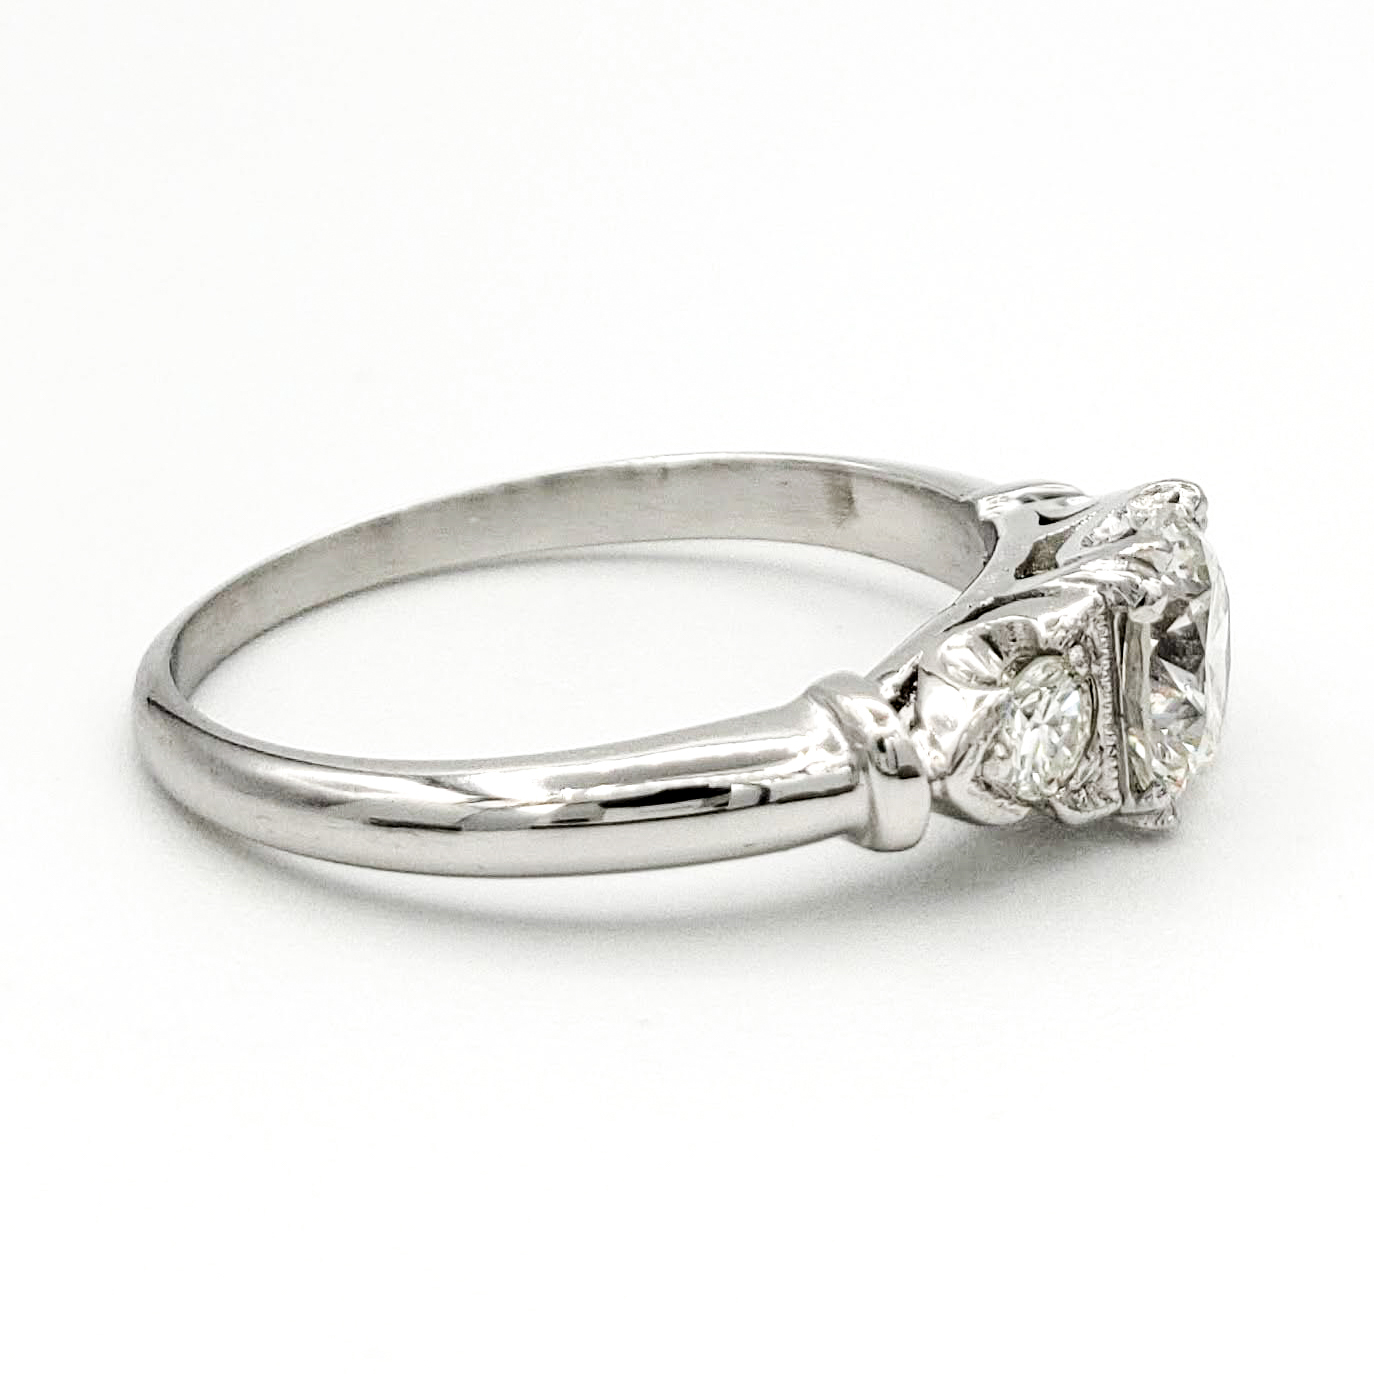 vintage-platinum-engagement-ring-with-0-58-carat-round-brilliant-cut-diamond-egl-h-vs2